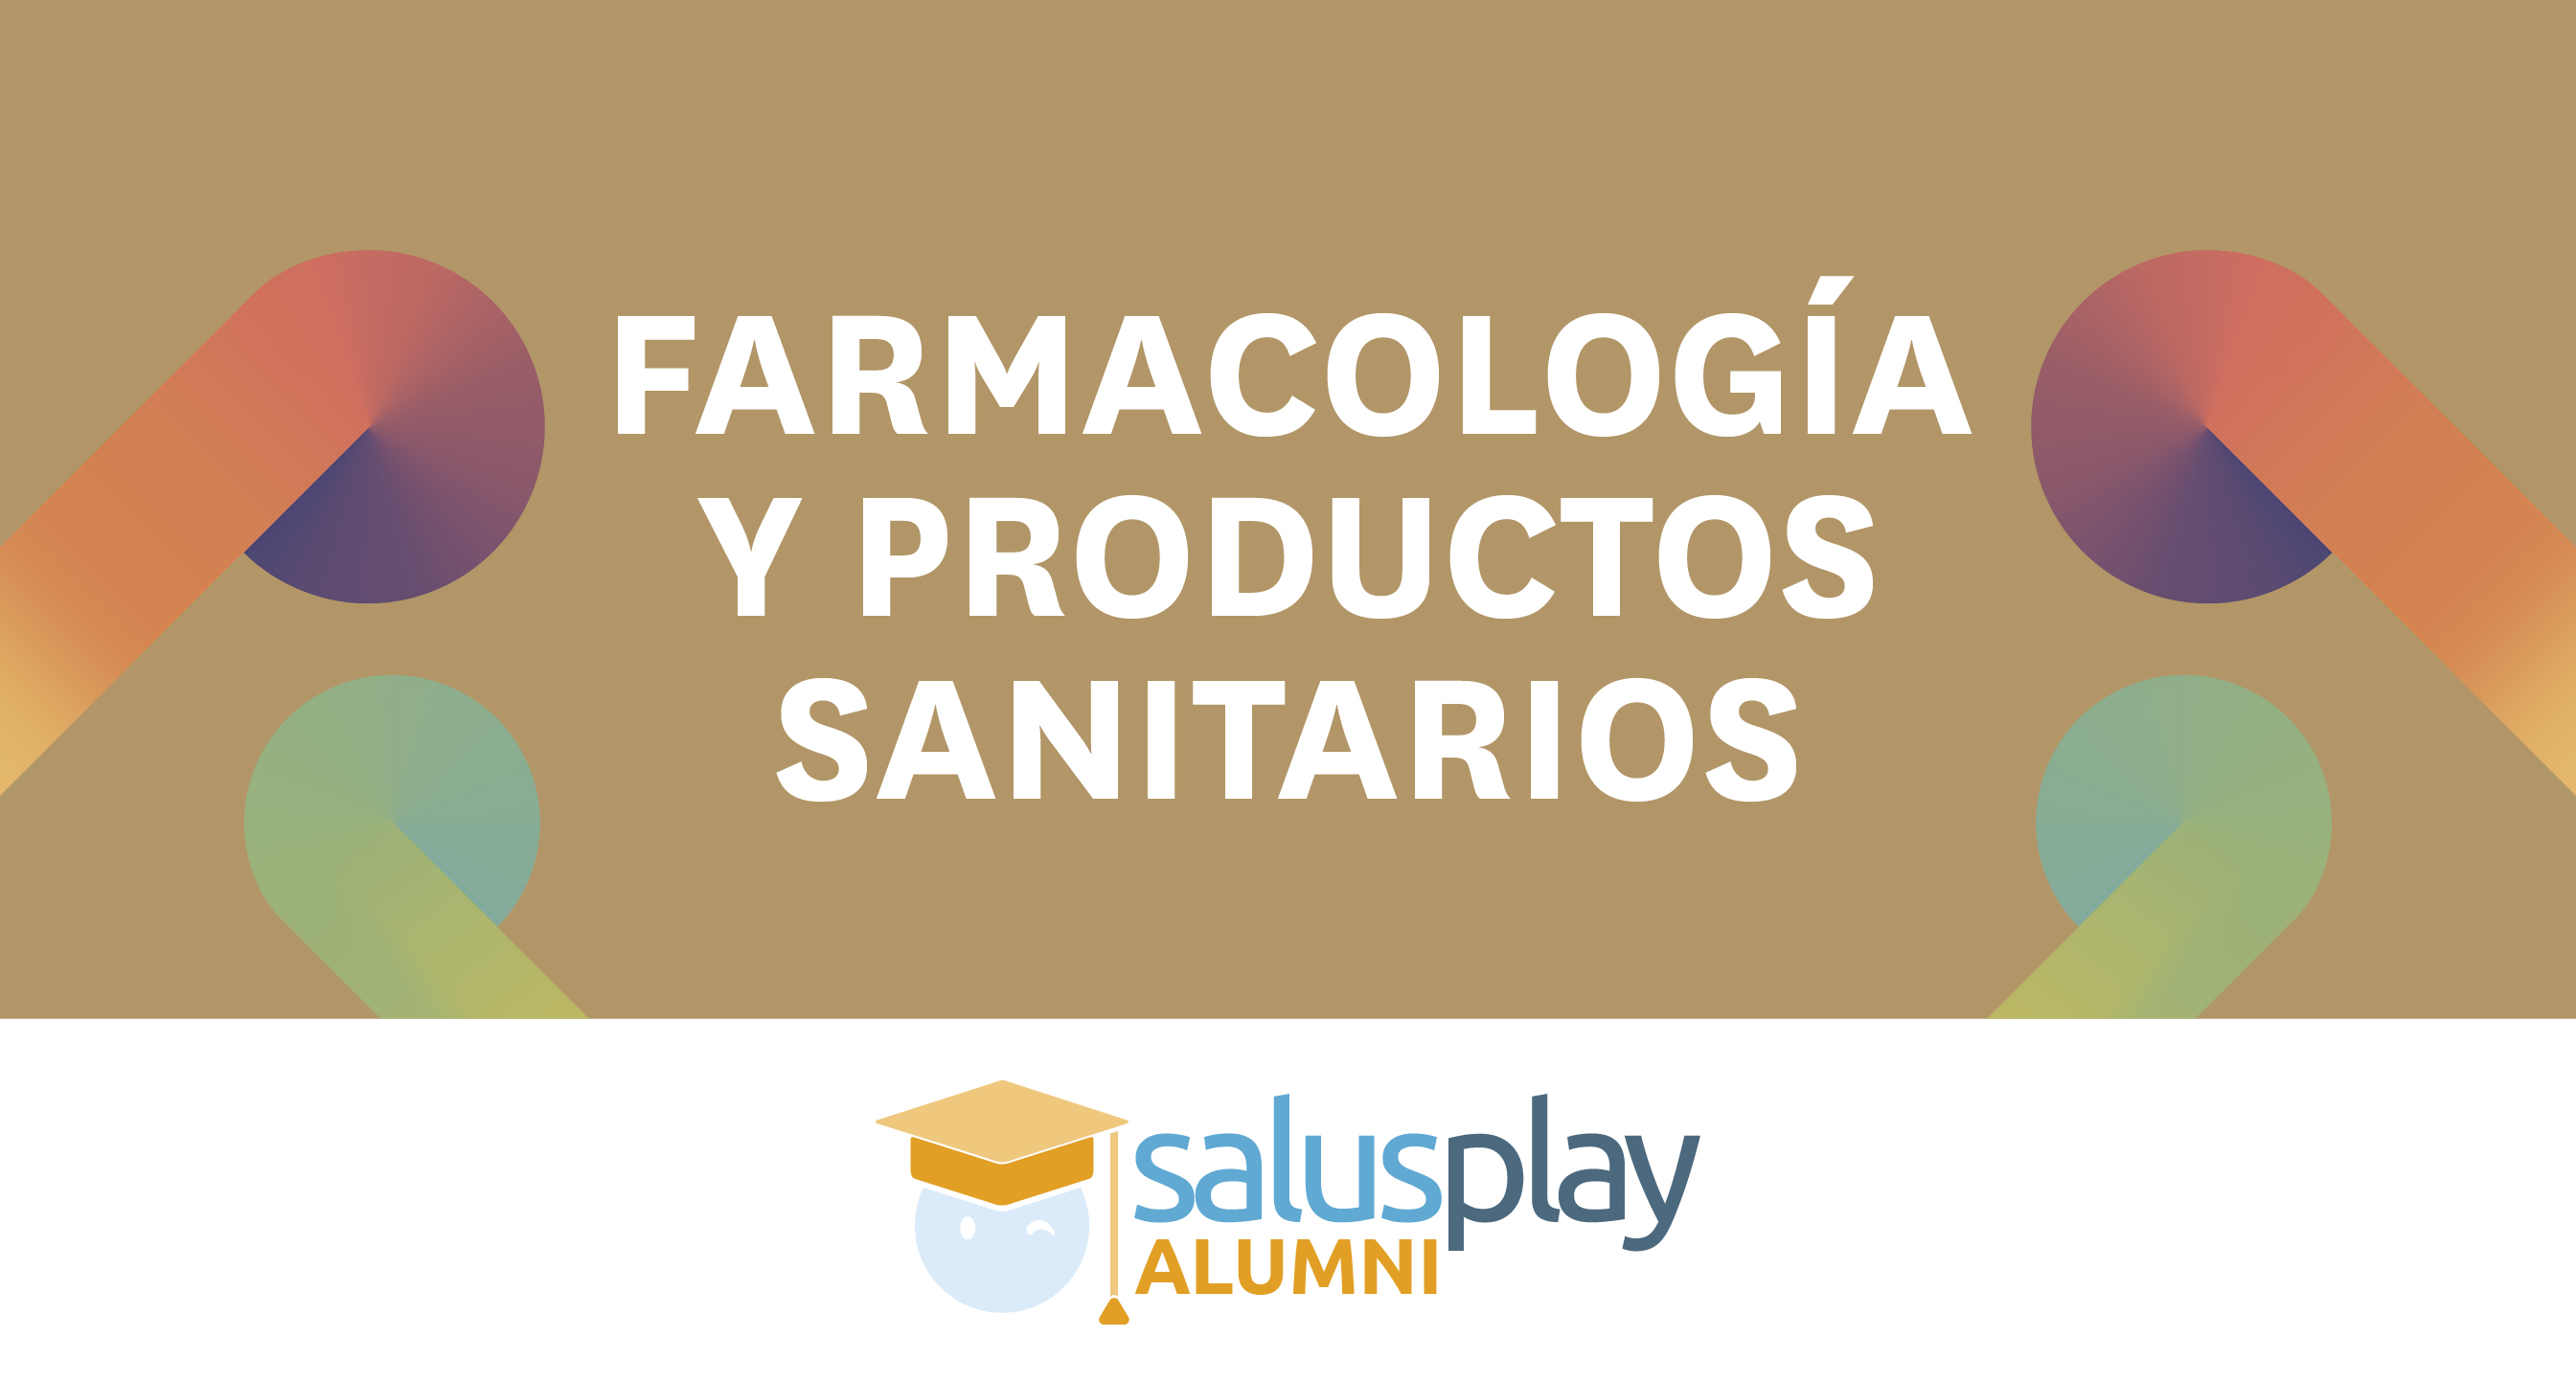 ALUMNI FARMACOLOGÍA Y PRODUCTOS SANITARIOS